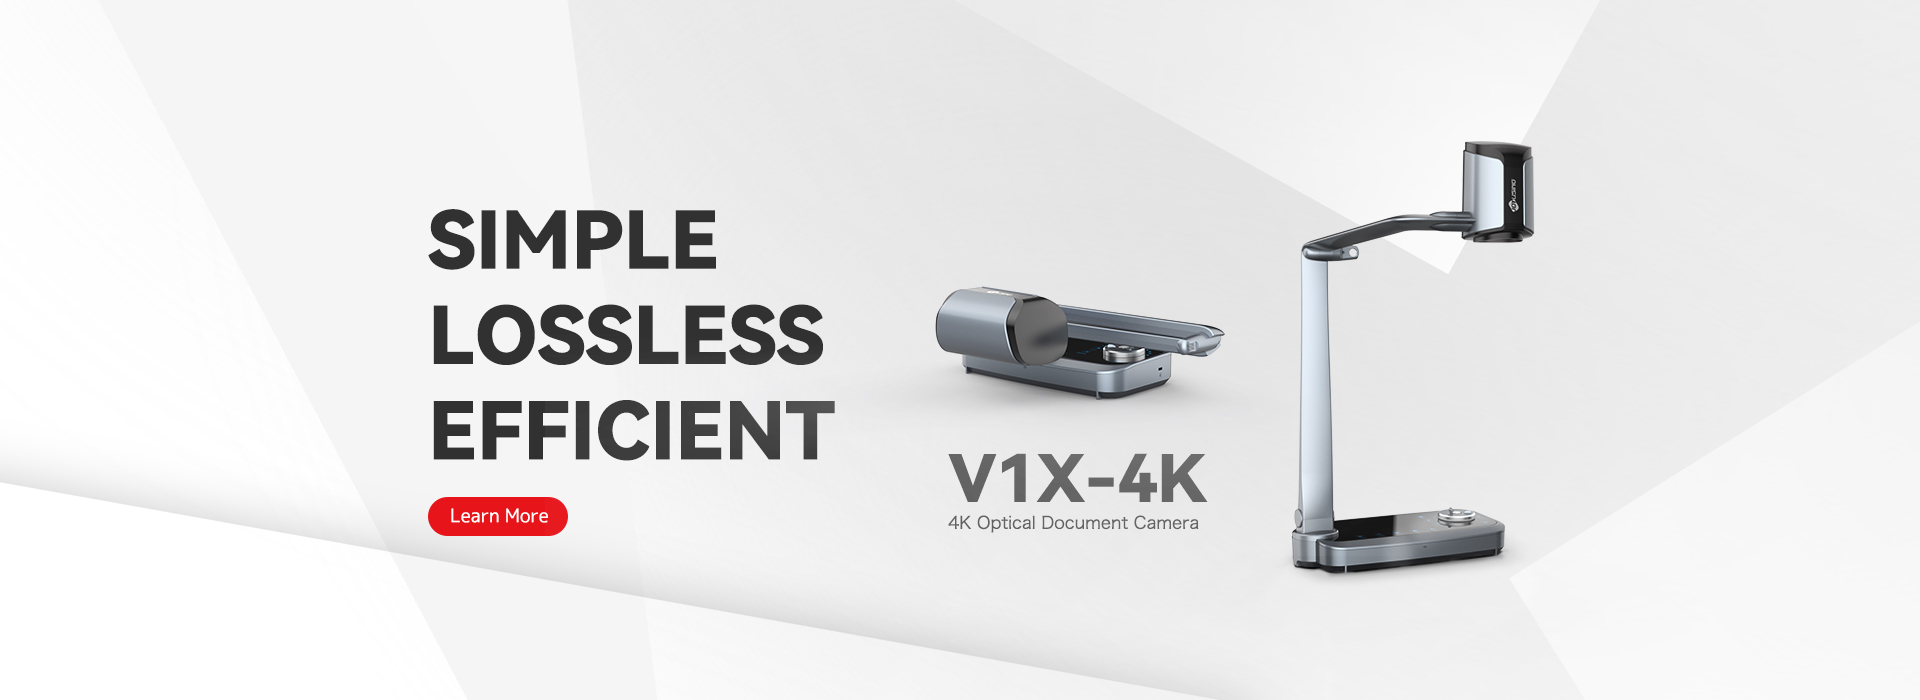 V1X-4K Document Camera